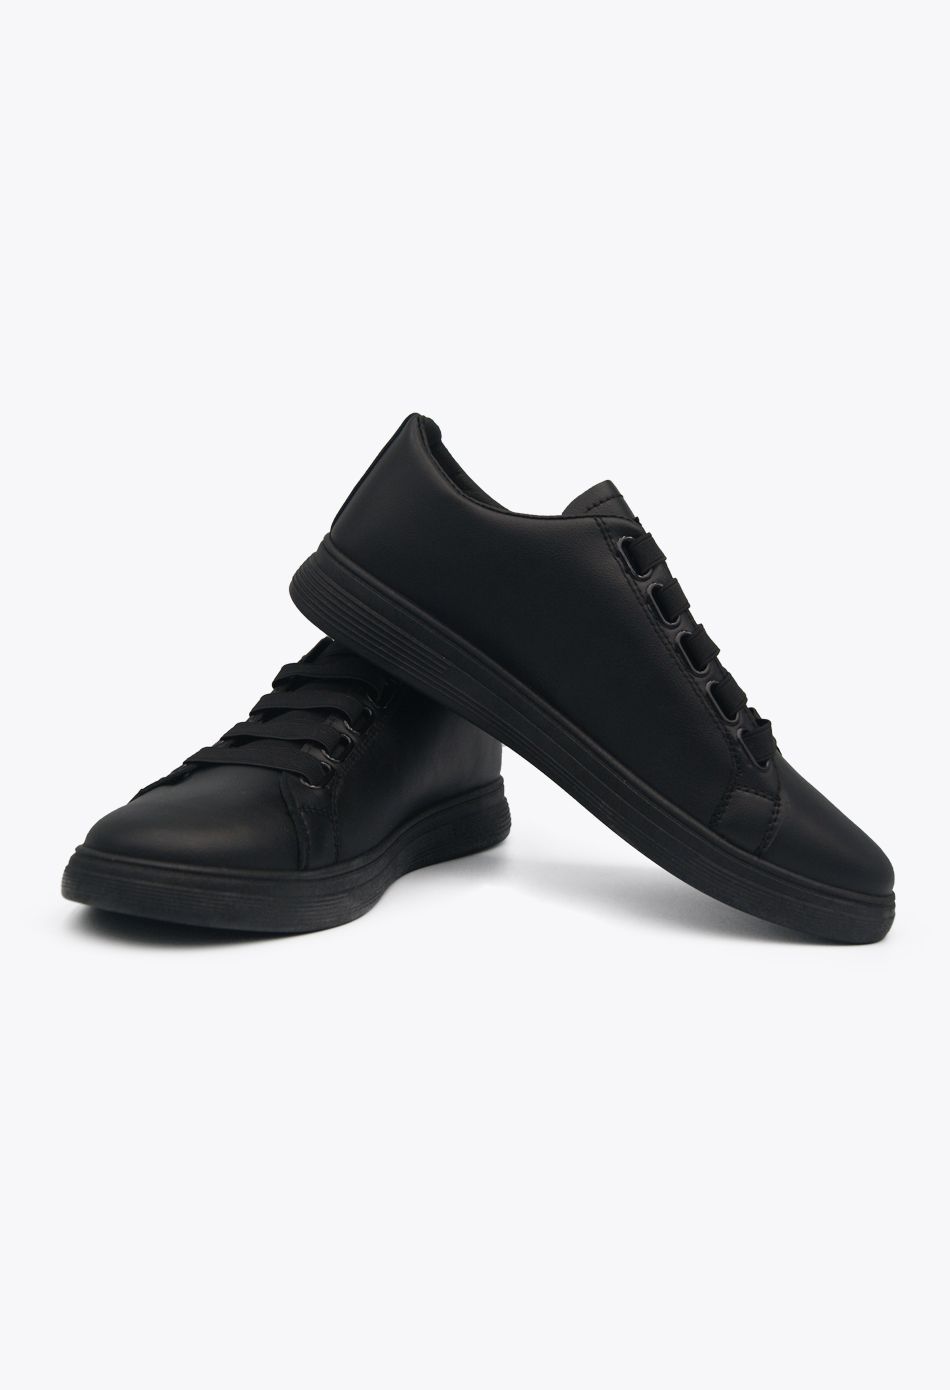 Ανδρικά Casual Sneakers μαύρο / A62-black ΑΘΛΗΤΙΚΑ & SNEAKERS joya.gr